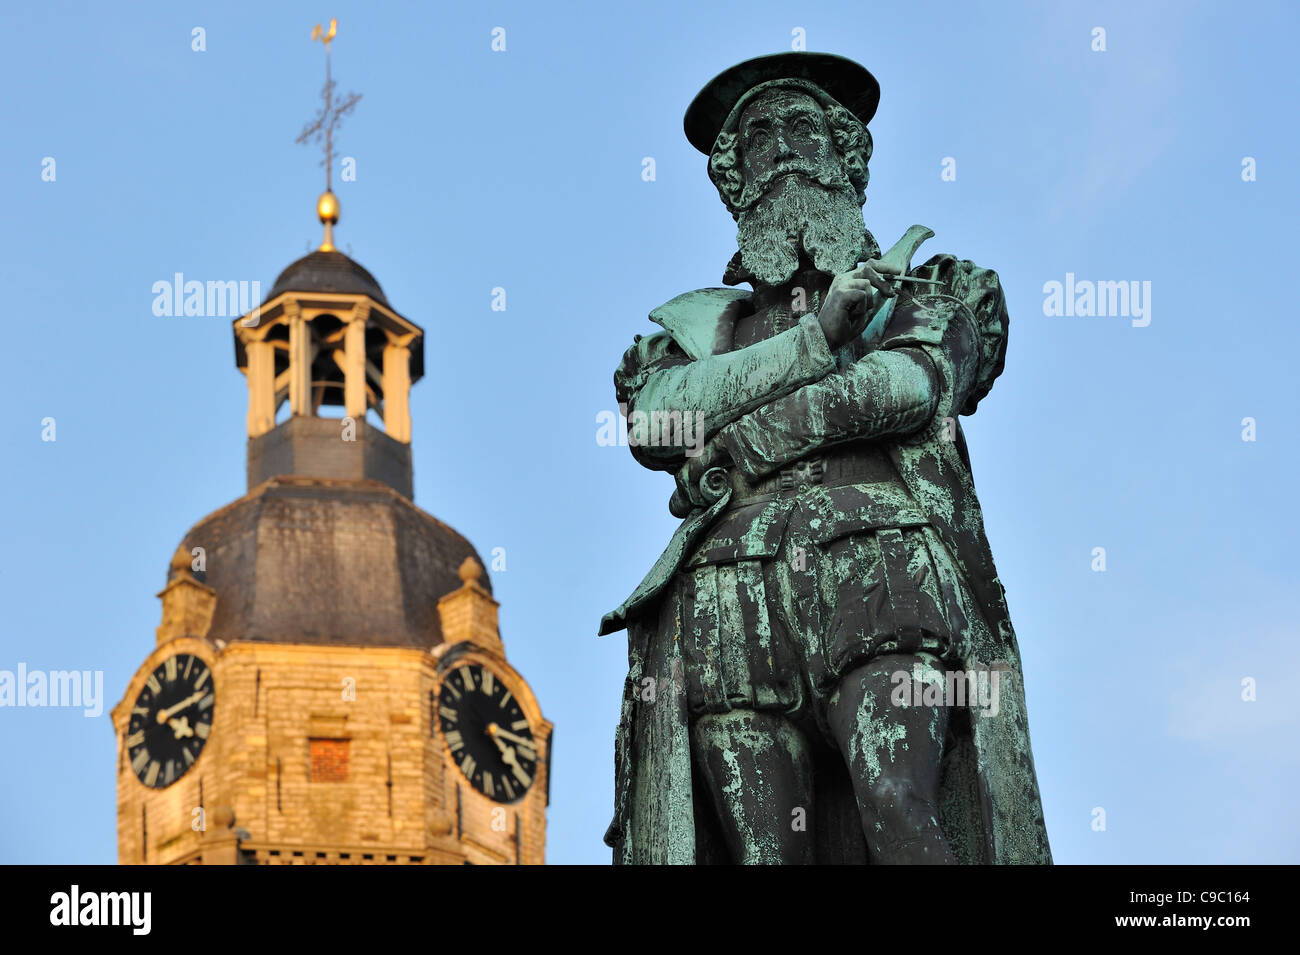 Statue de Gerardus Mercator, cartographe flamand, en face de l'église de Notre Dame à Rupelmonde, Belgique Banque D'Images